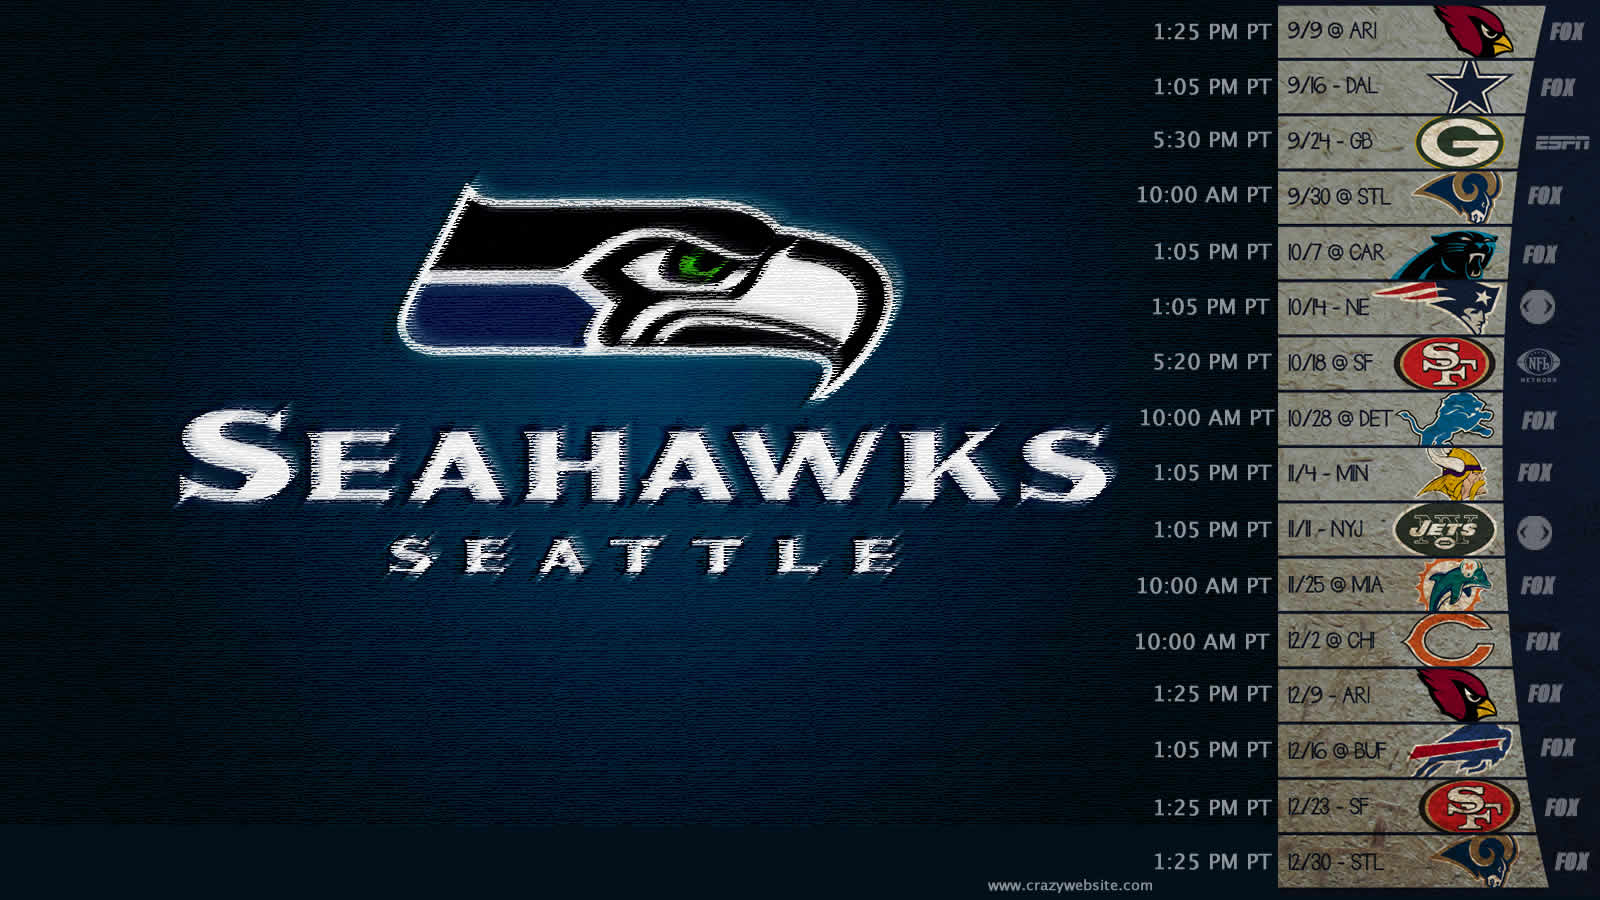 Seahawks schedule 2012 wallpaper FLI